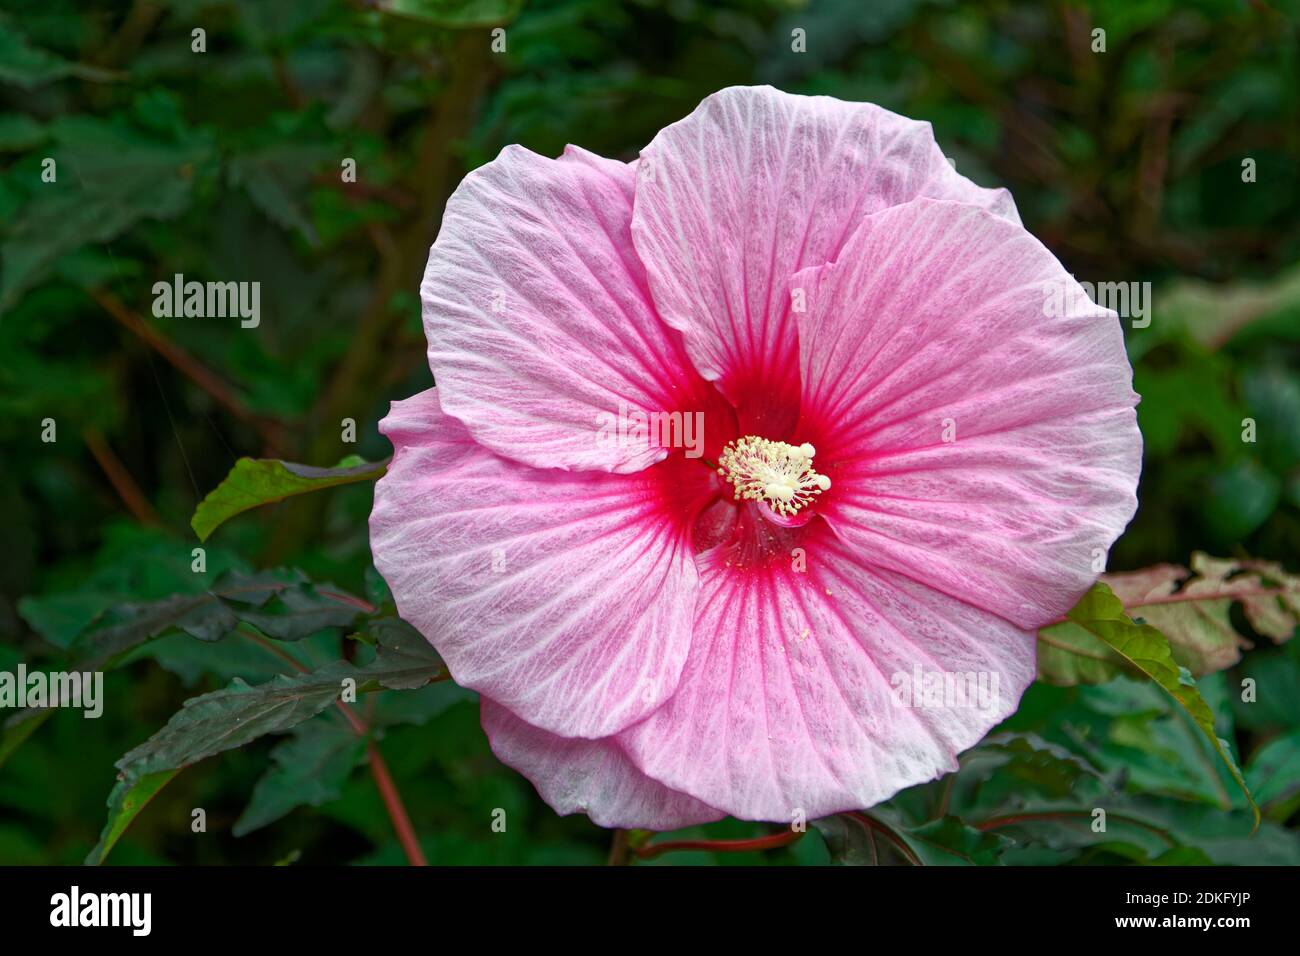 Hibiscus rose, fleur cultivée, centre rose, stigmate jaune pâle, Malvaceae, Pennsylvanie; été Banque D'Images